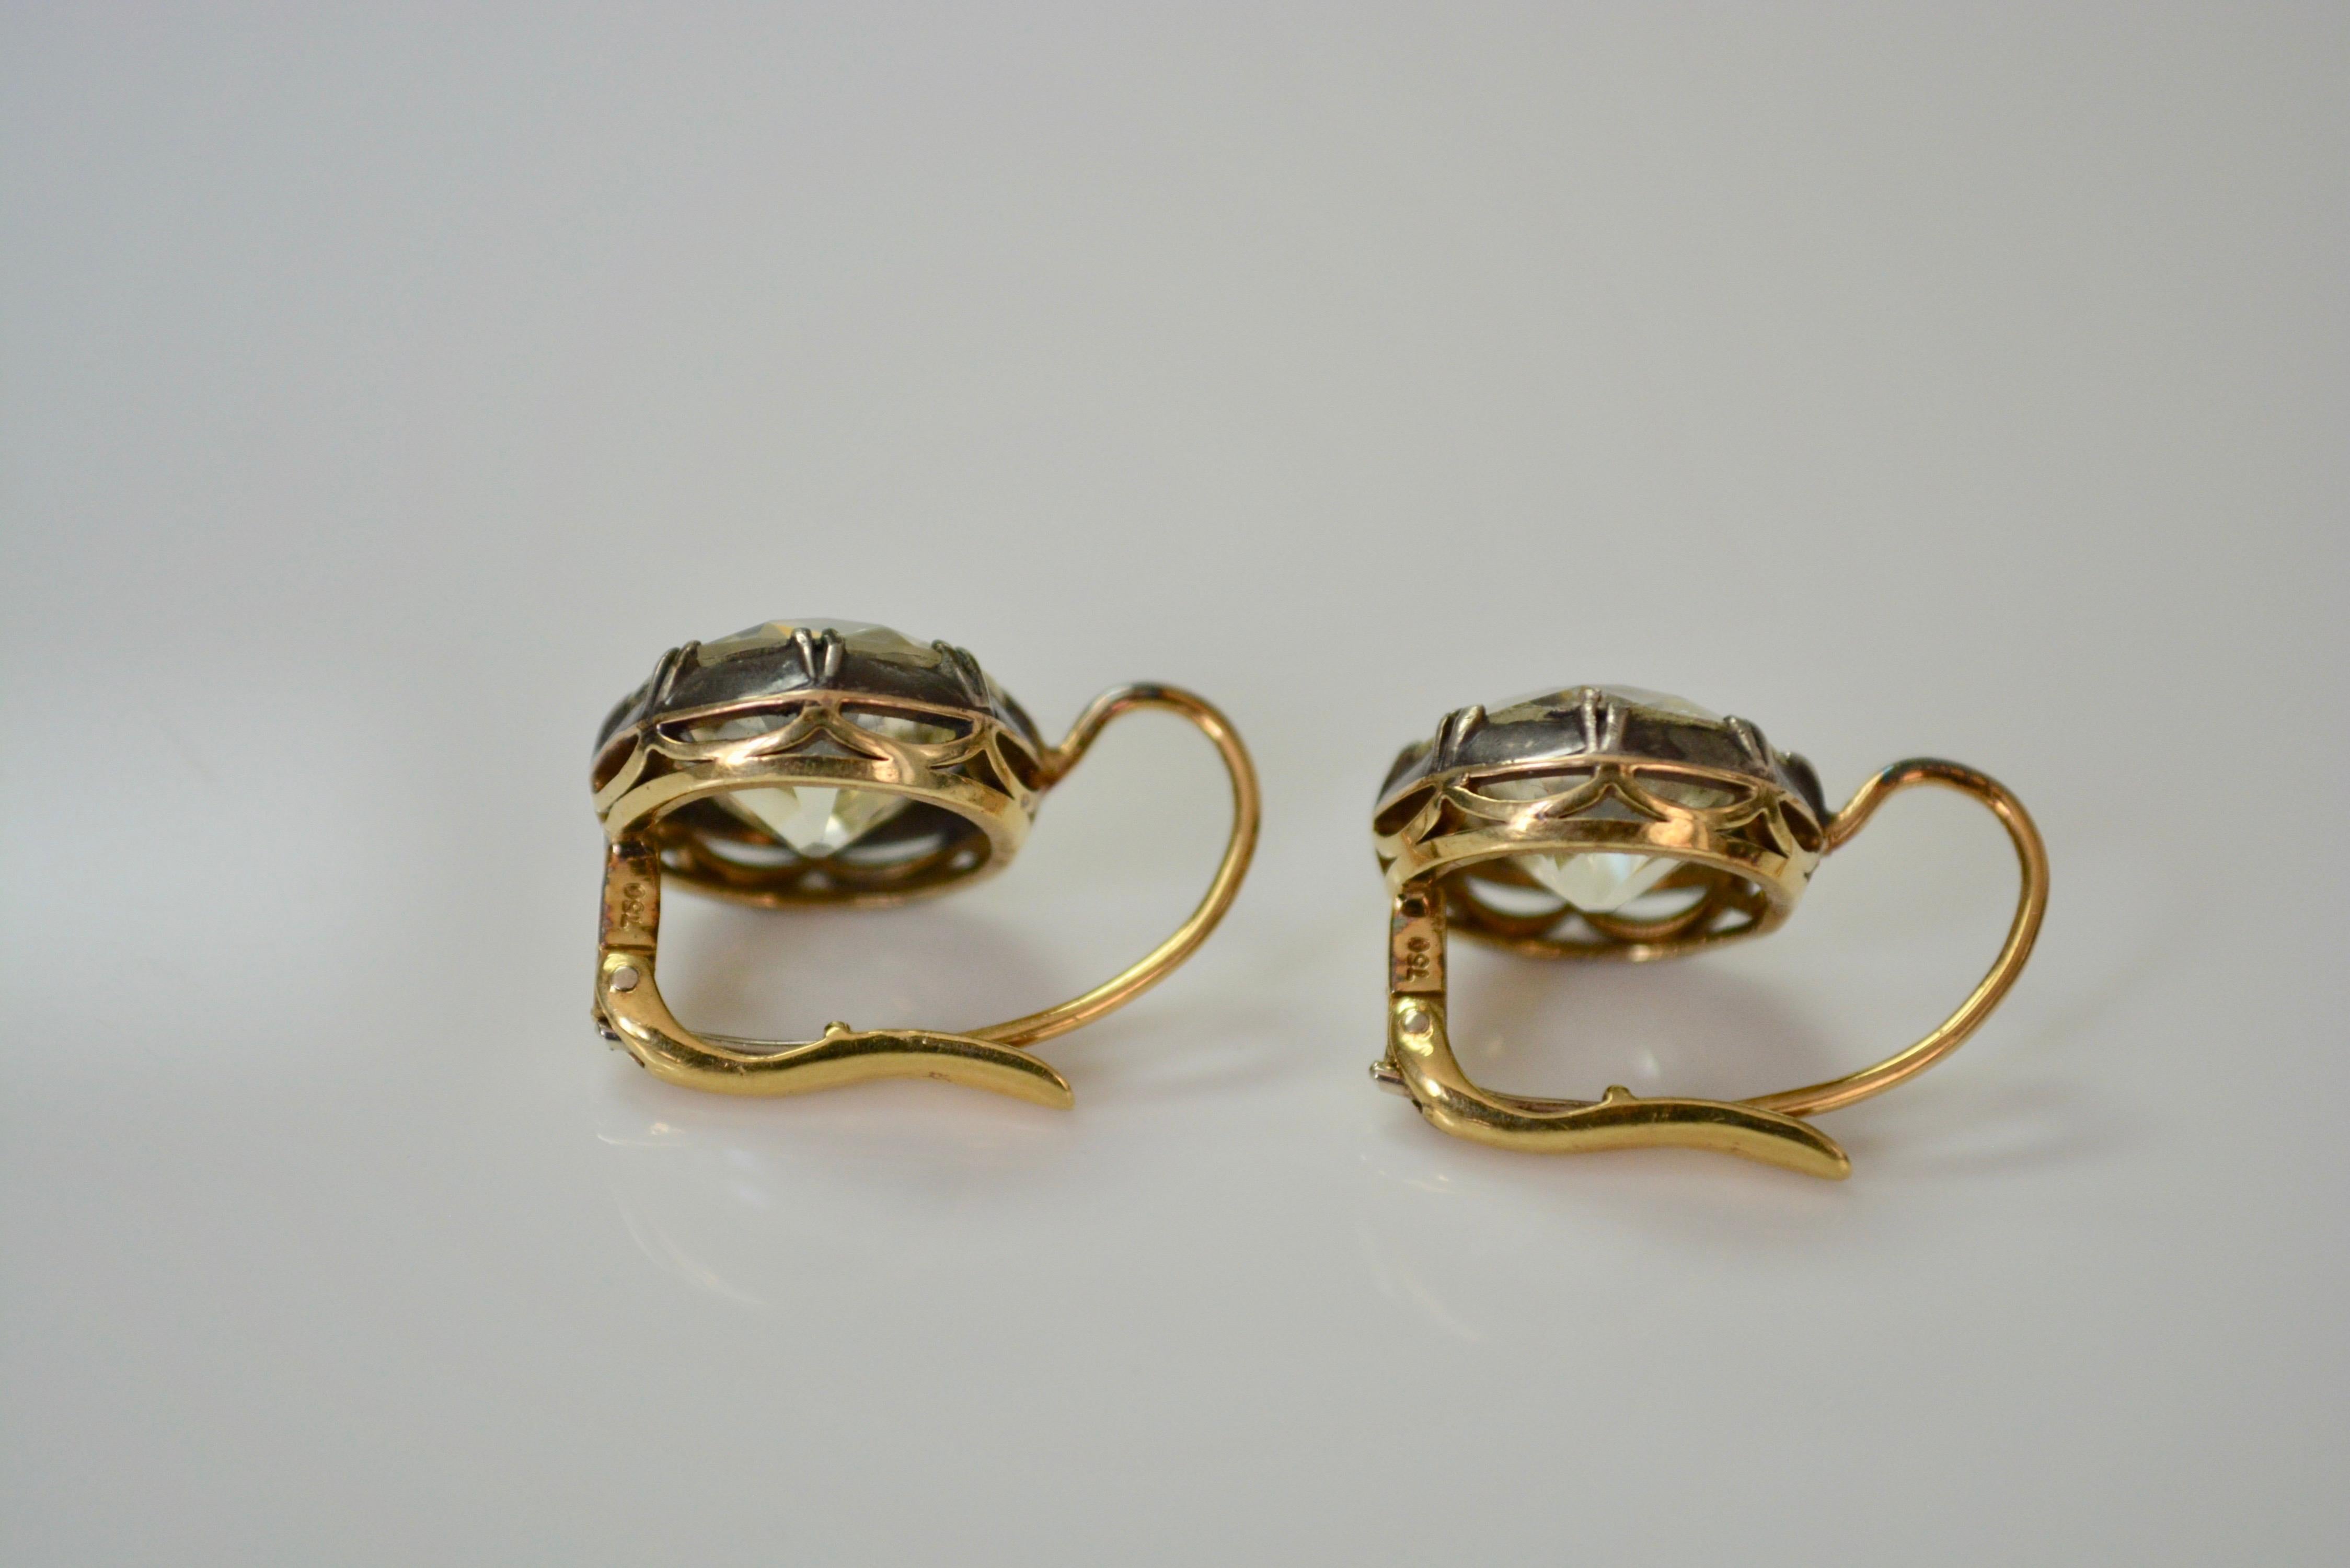 11.67 Carat Old European Cut Diamond Antique Style Dangle Earrings in 18 K Gold 7